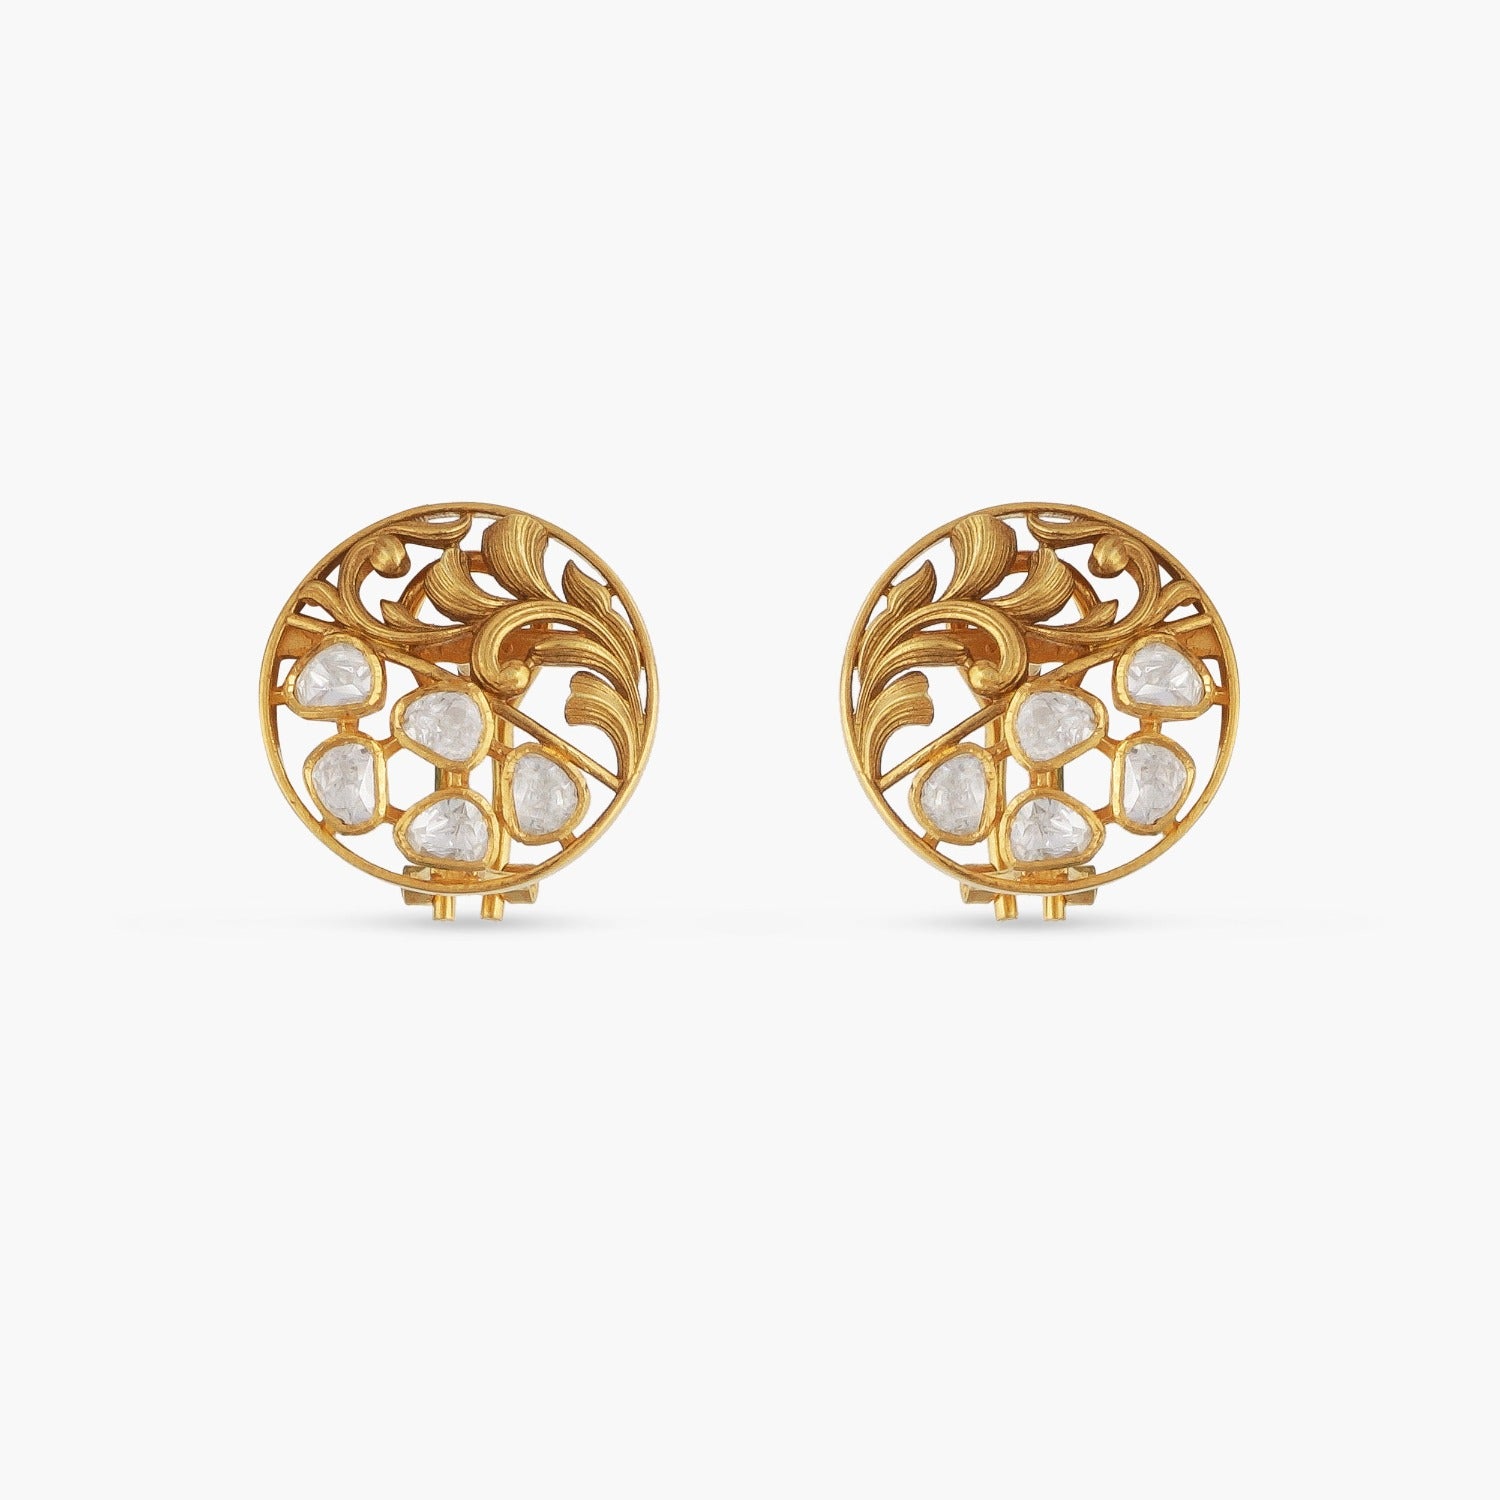 Buy Twin Tarpini Diamond Earring At Best Price | Karuri Jewellers